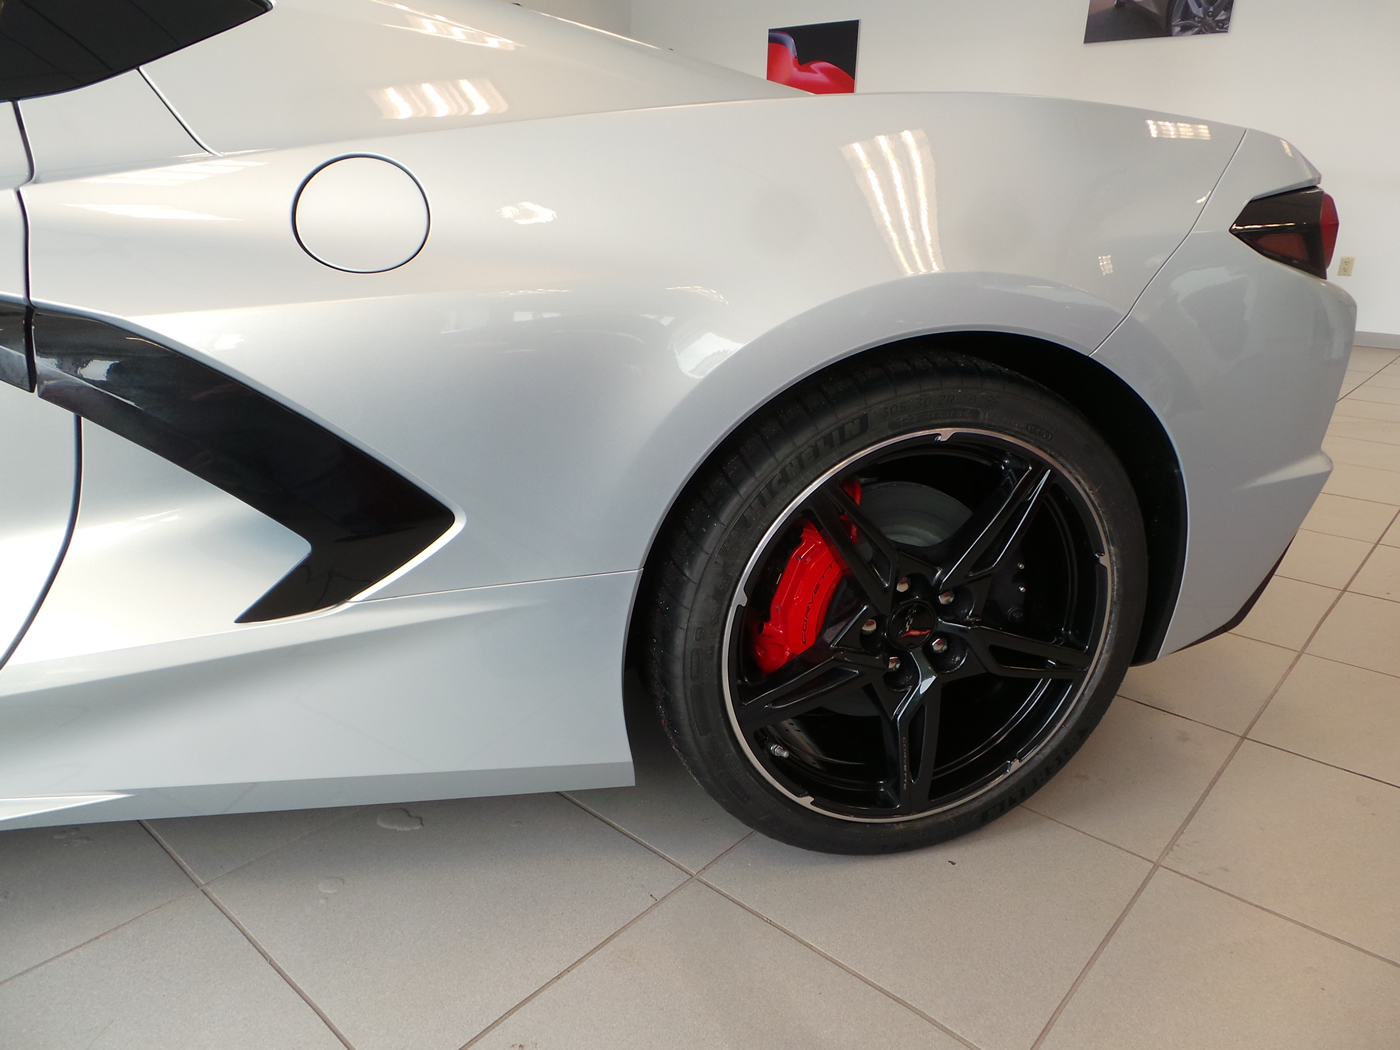 2021 Corvette Coupe in Silver Flare Metallic